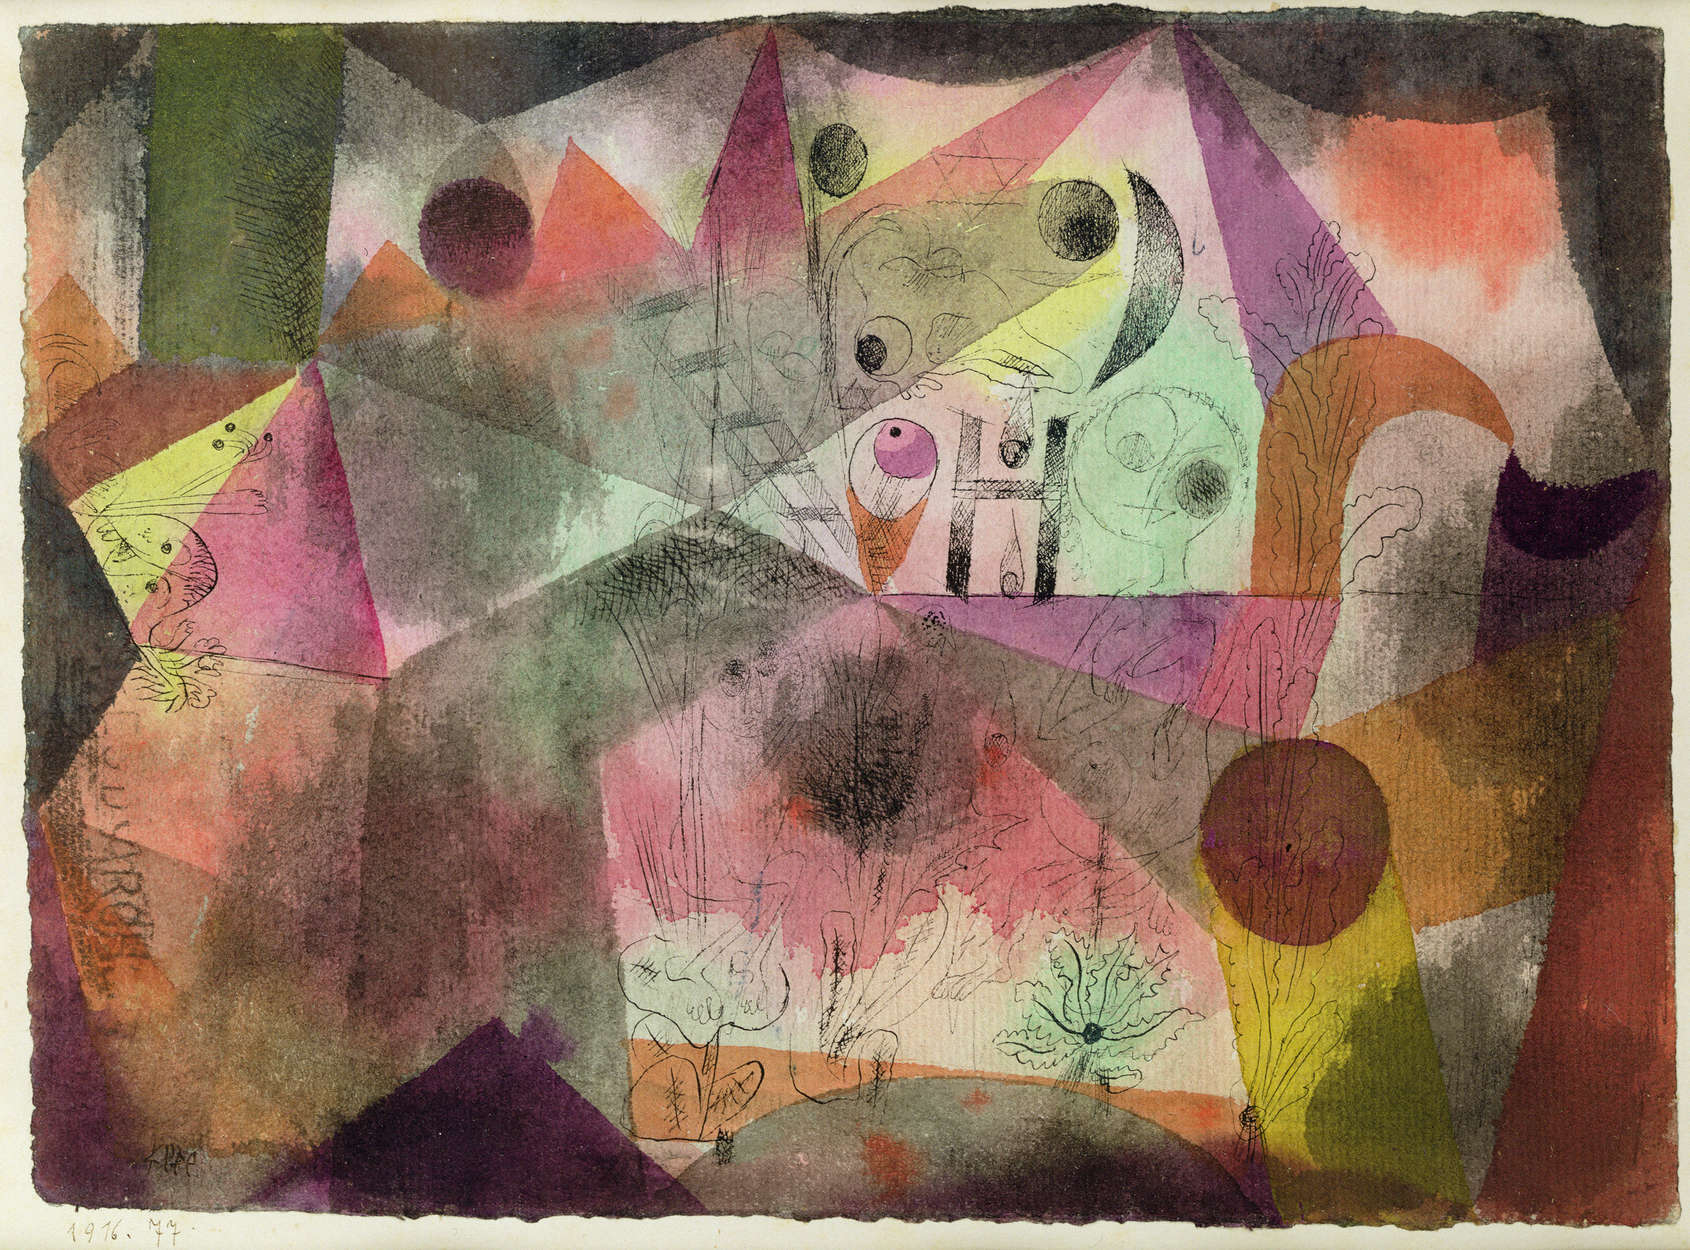             Mural "Con la H" de Paul Klee
        